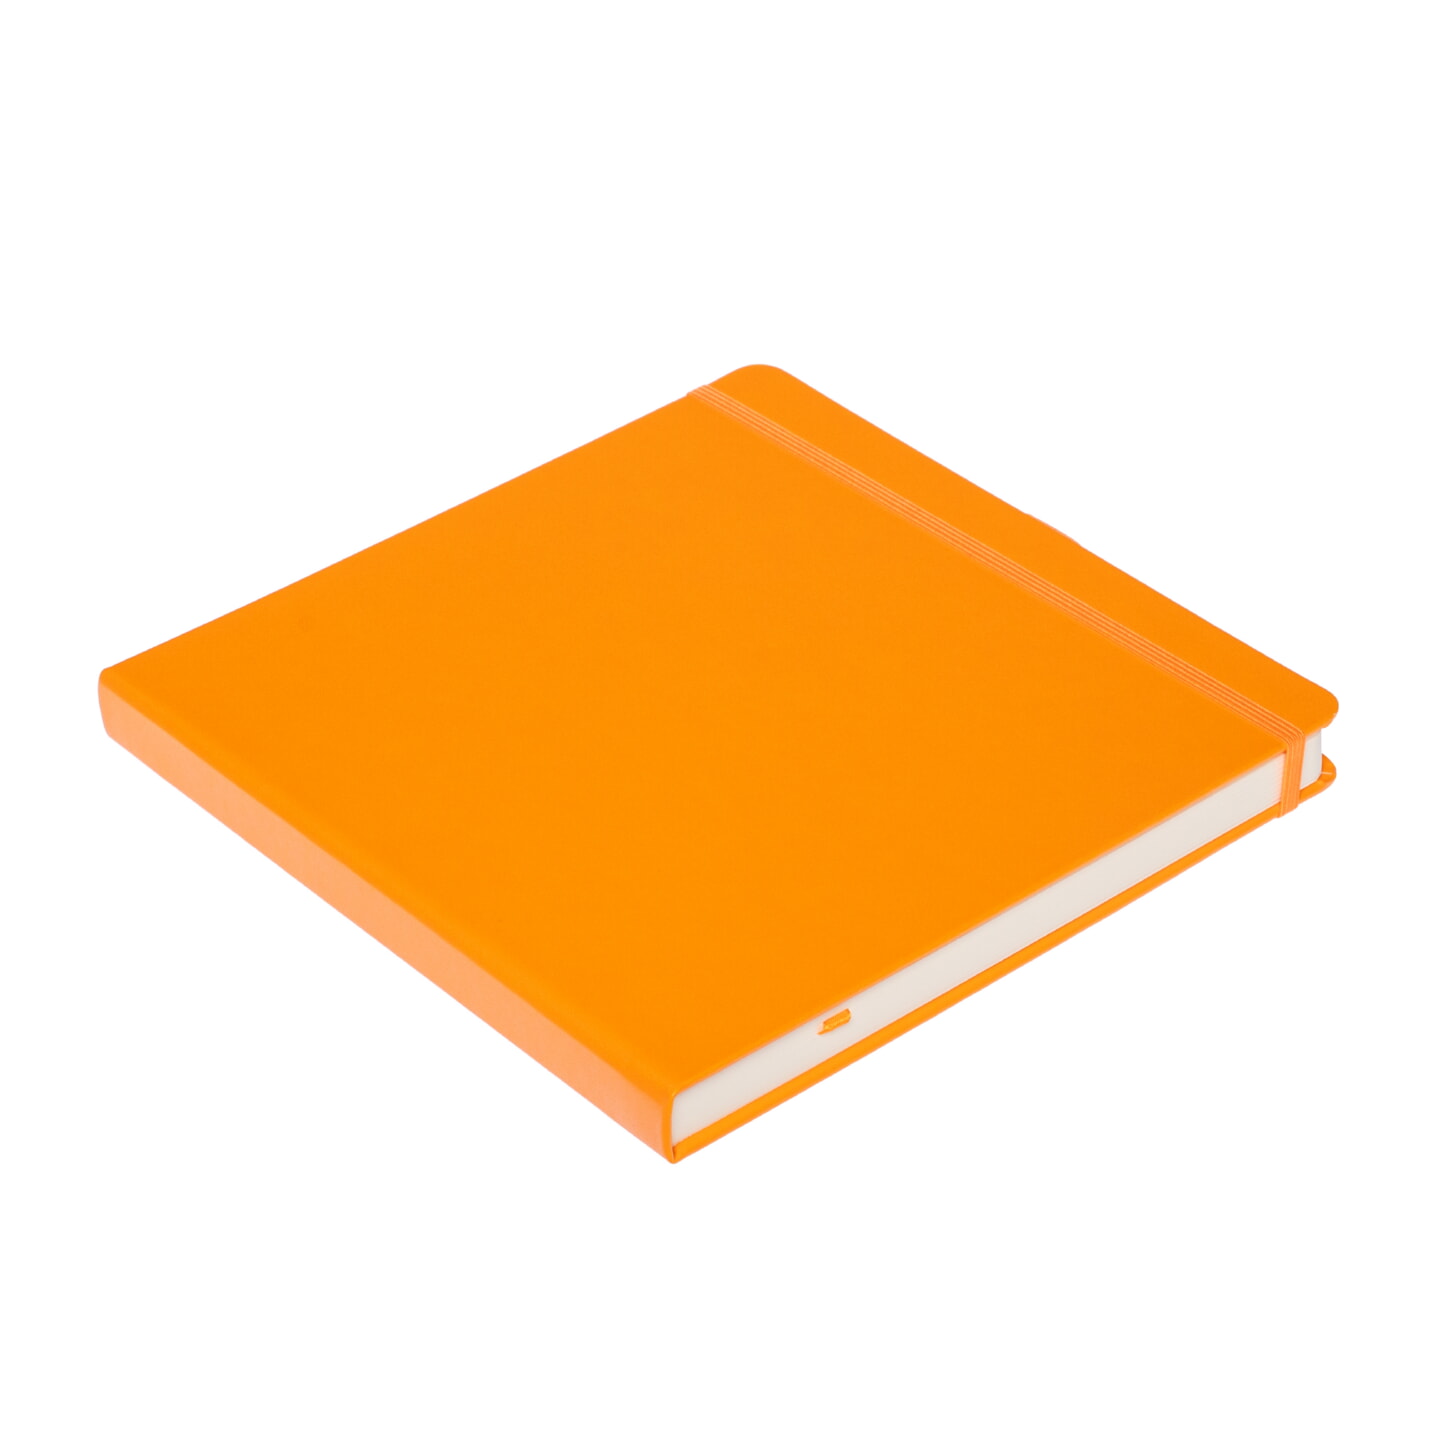 Блокнот для зарисовок Sketchmarker 140г/кв.м 20*20cм 80л твердая обложка Неоновый апельсин